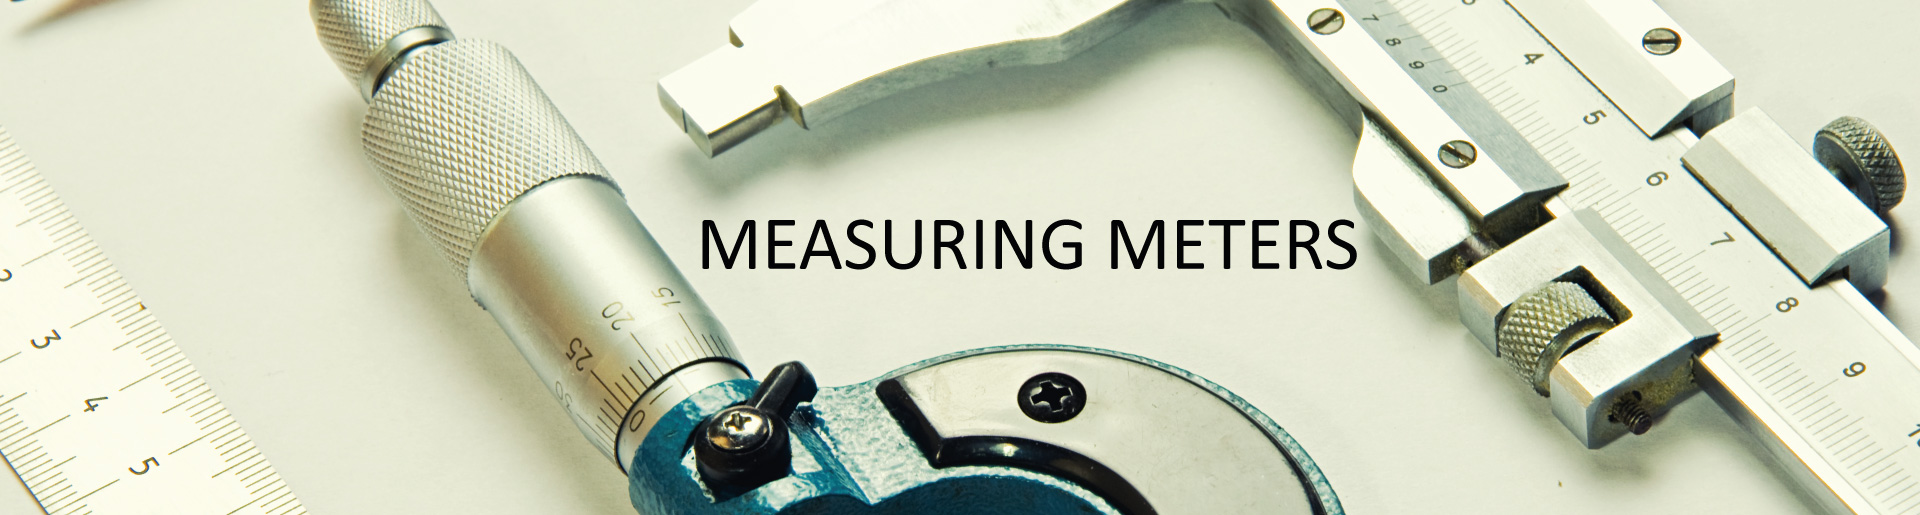 measuring meters